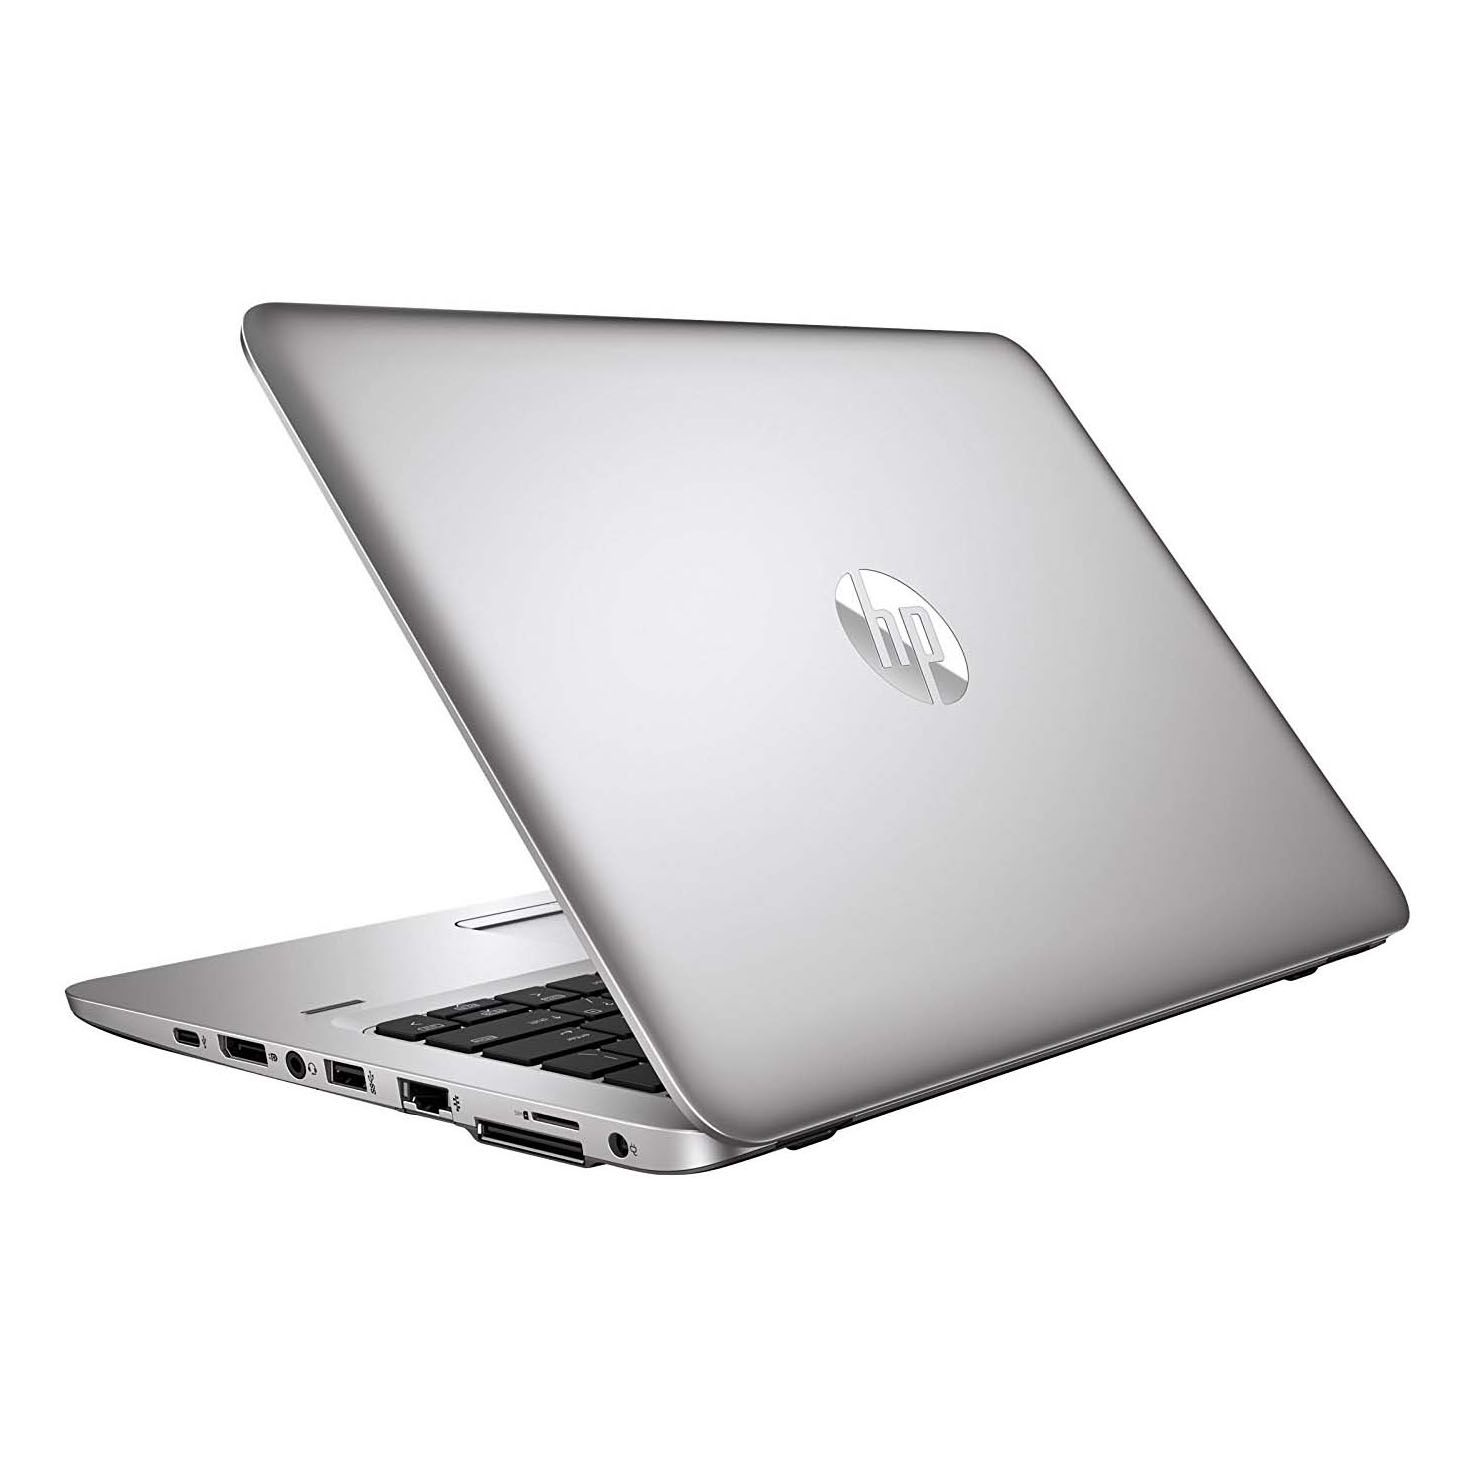 HP Elitebook 820 G3 i5-6300U / Ram 8GB / SSD 256GB / Màn 12.5